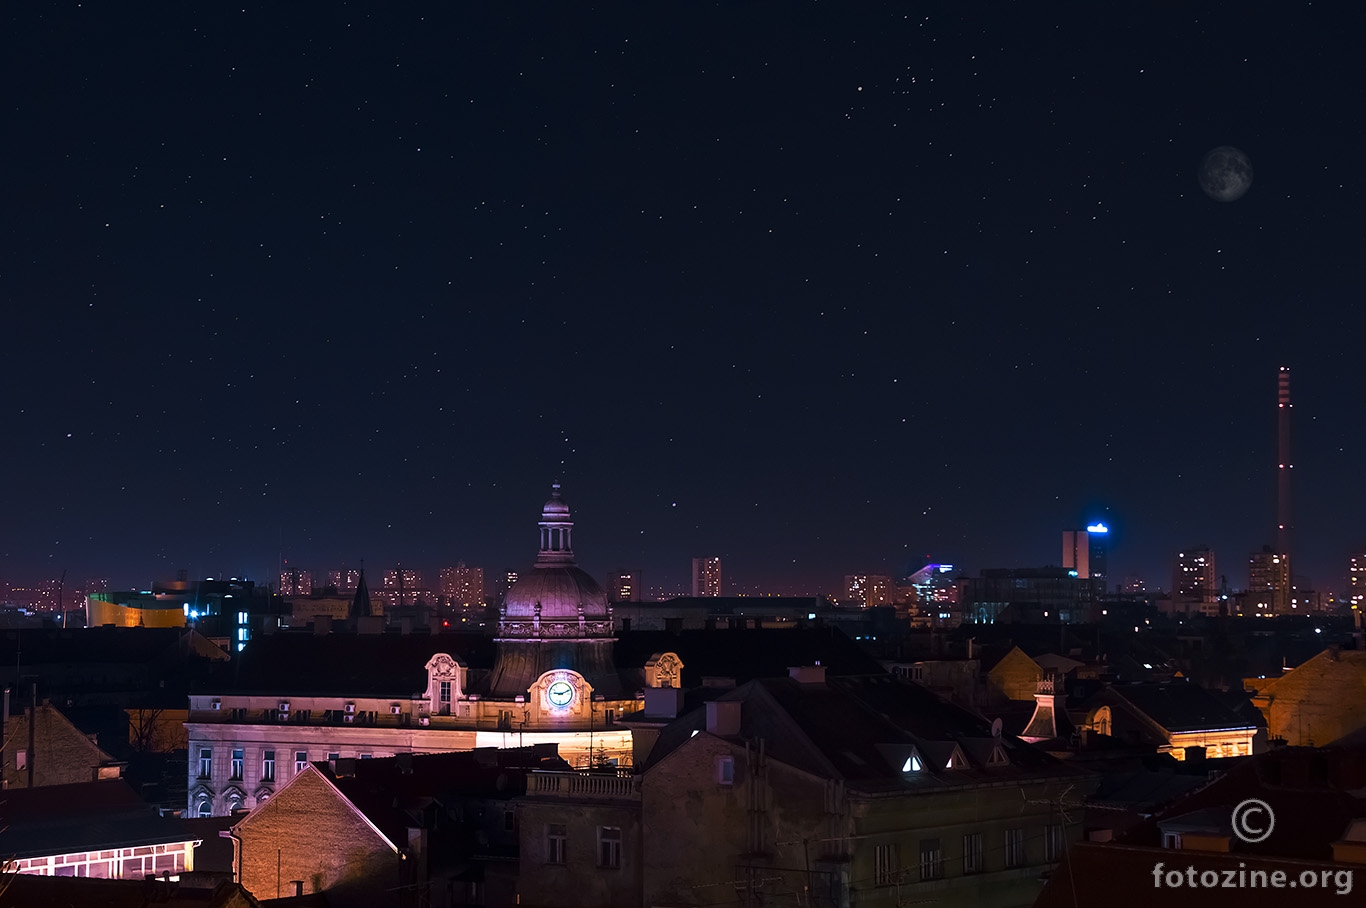 Zagreb in the night...!